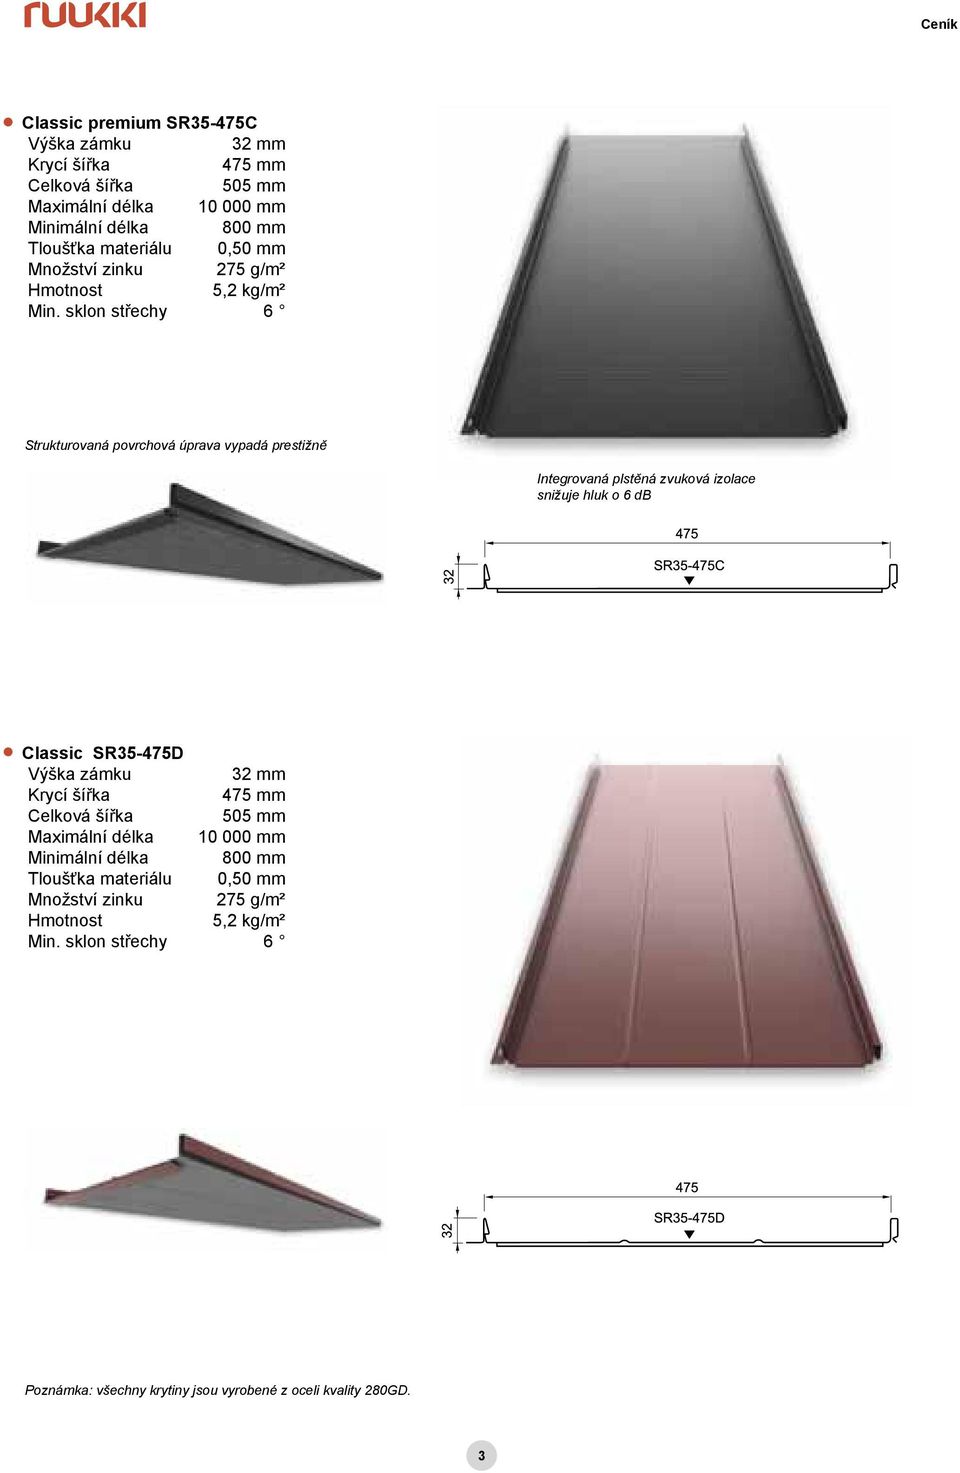 sklon střechy 6 Strukturovaná povrchová úprava vypadá prestižně Integrovaná plstěná zvuková izolace snižuje hluk o